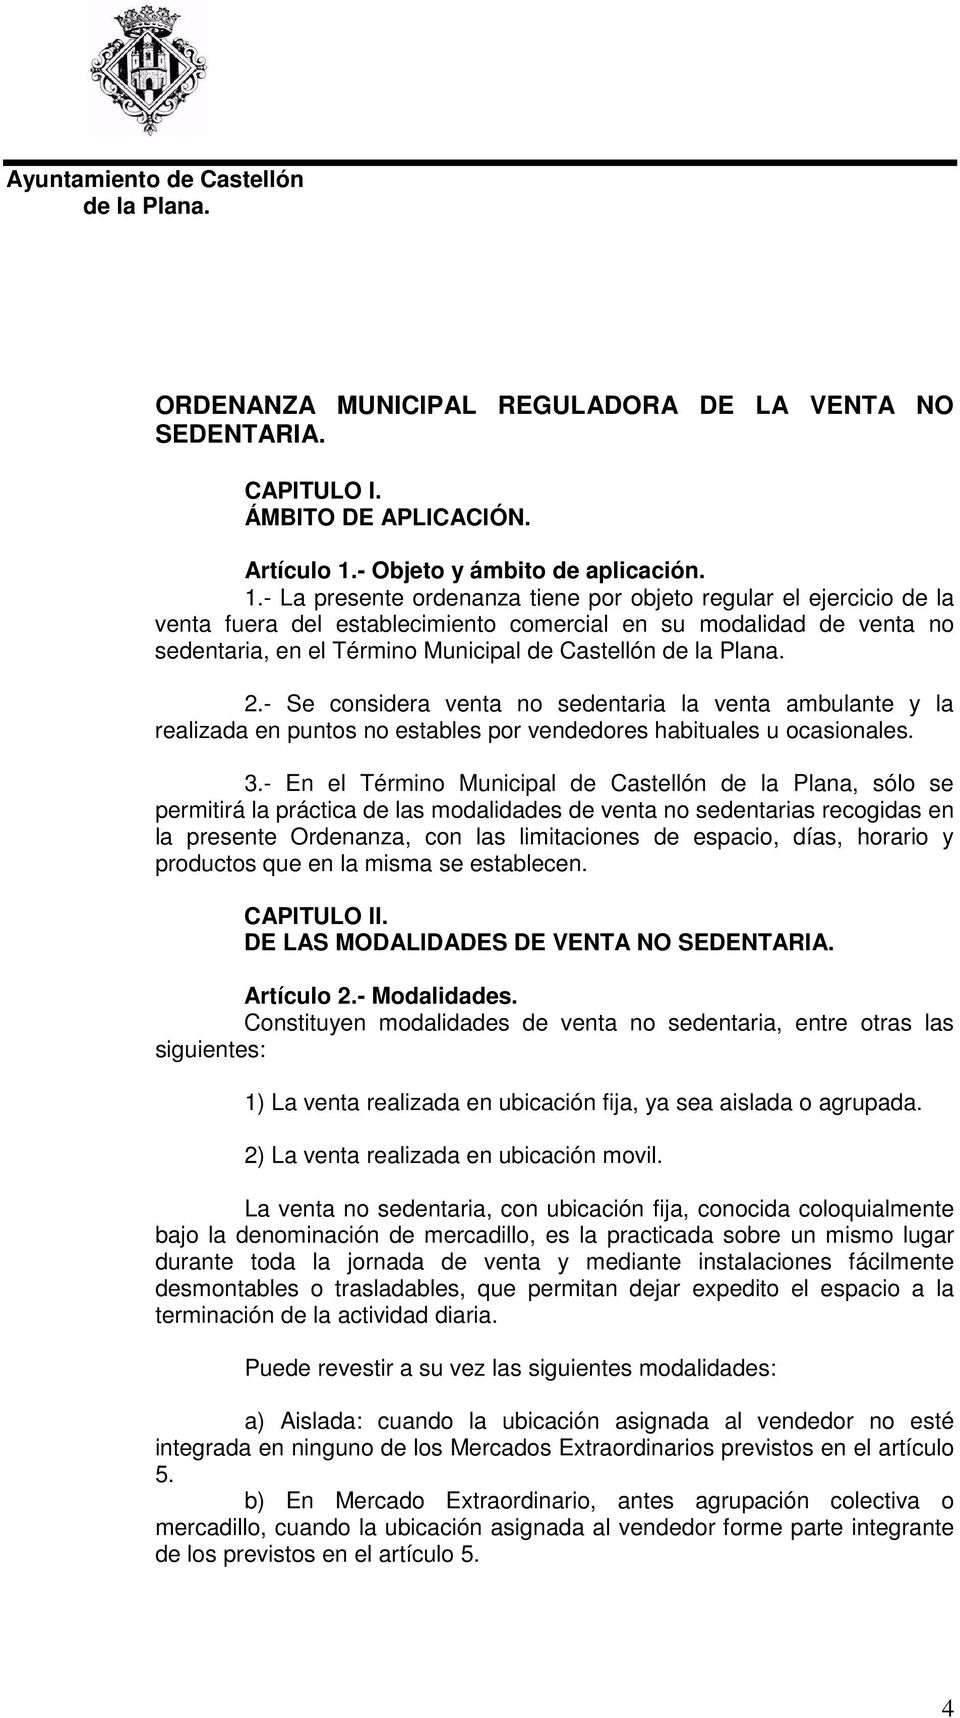 - La presente ordenanza tiene por objeto regular el ejercicio de la venta fuera del establecimiento comercial en su modalidad de venta no sedentaria, en el Término Municipal de Castellón 2.